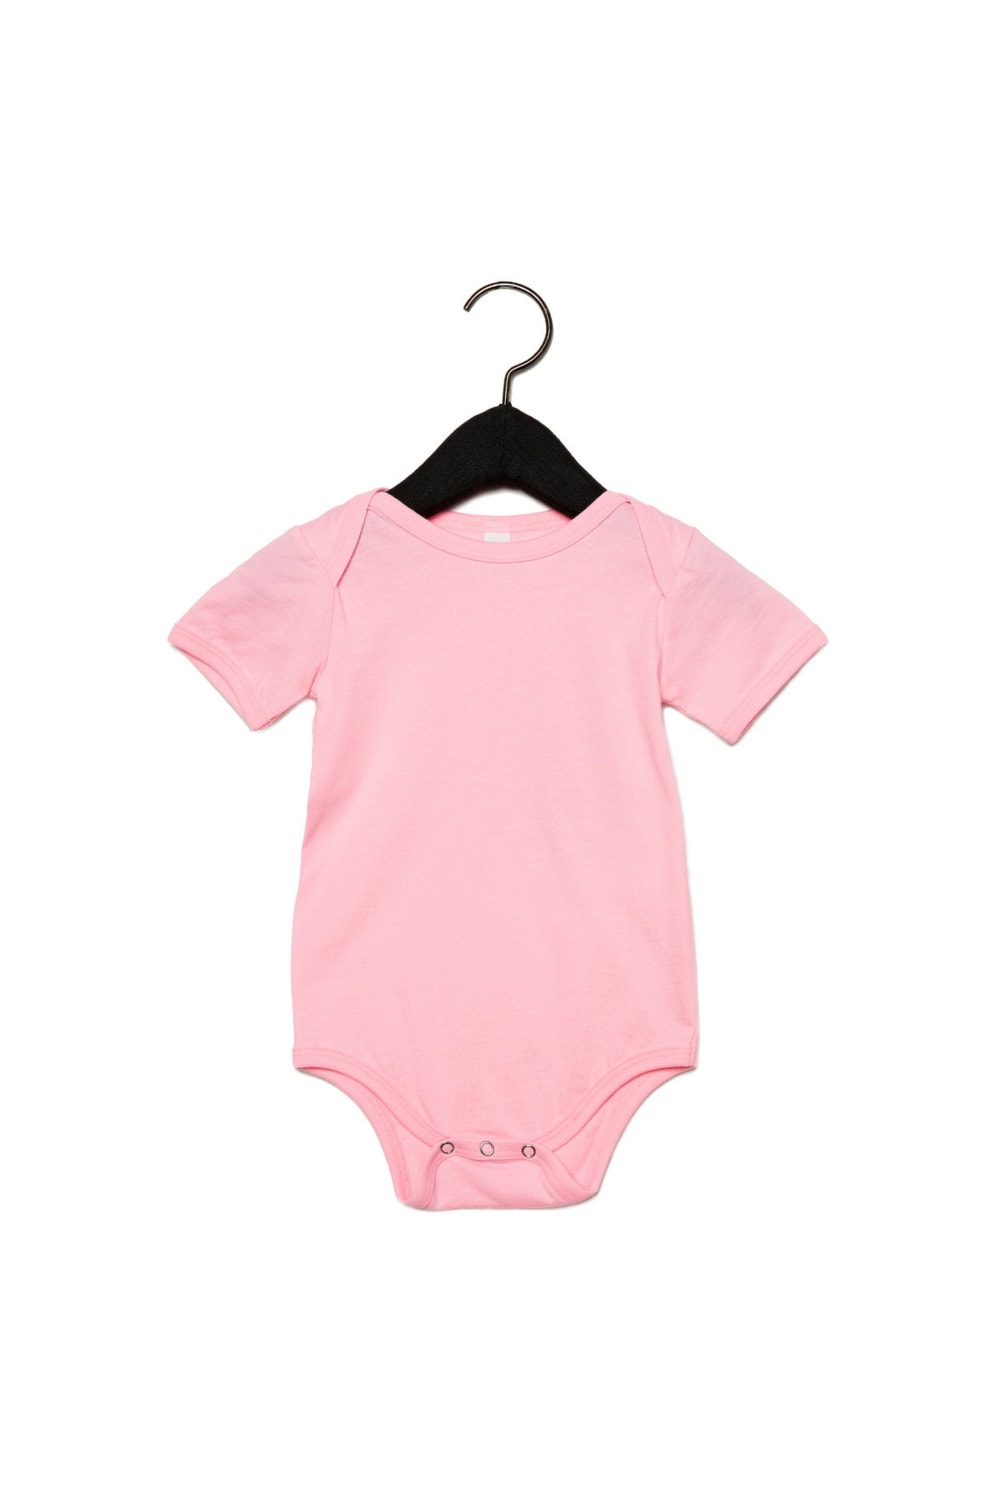 Bella + Canvas Baby Jersey Short Sleeve Onesie (Pink)